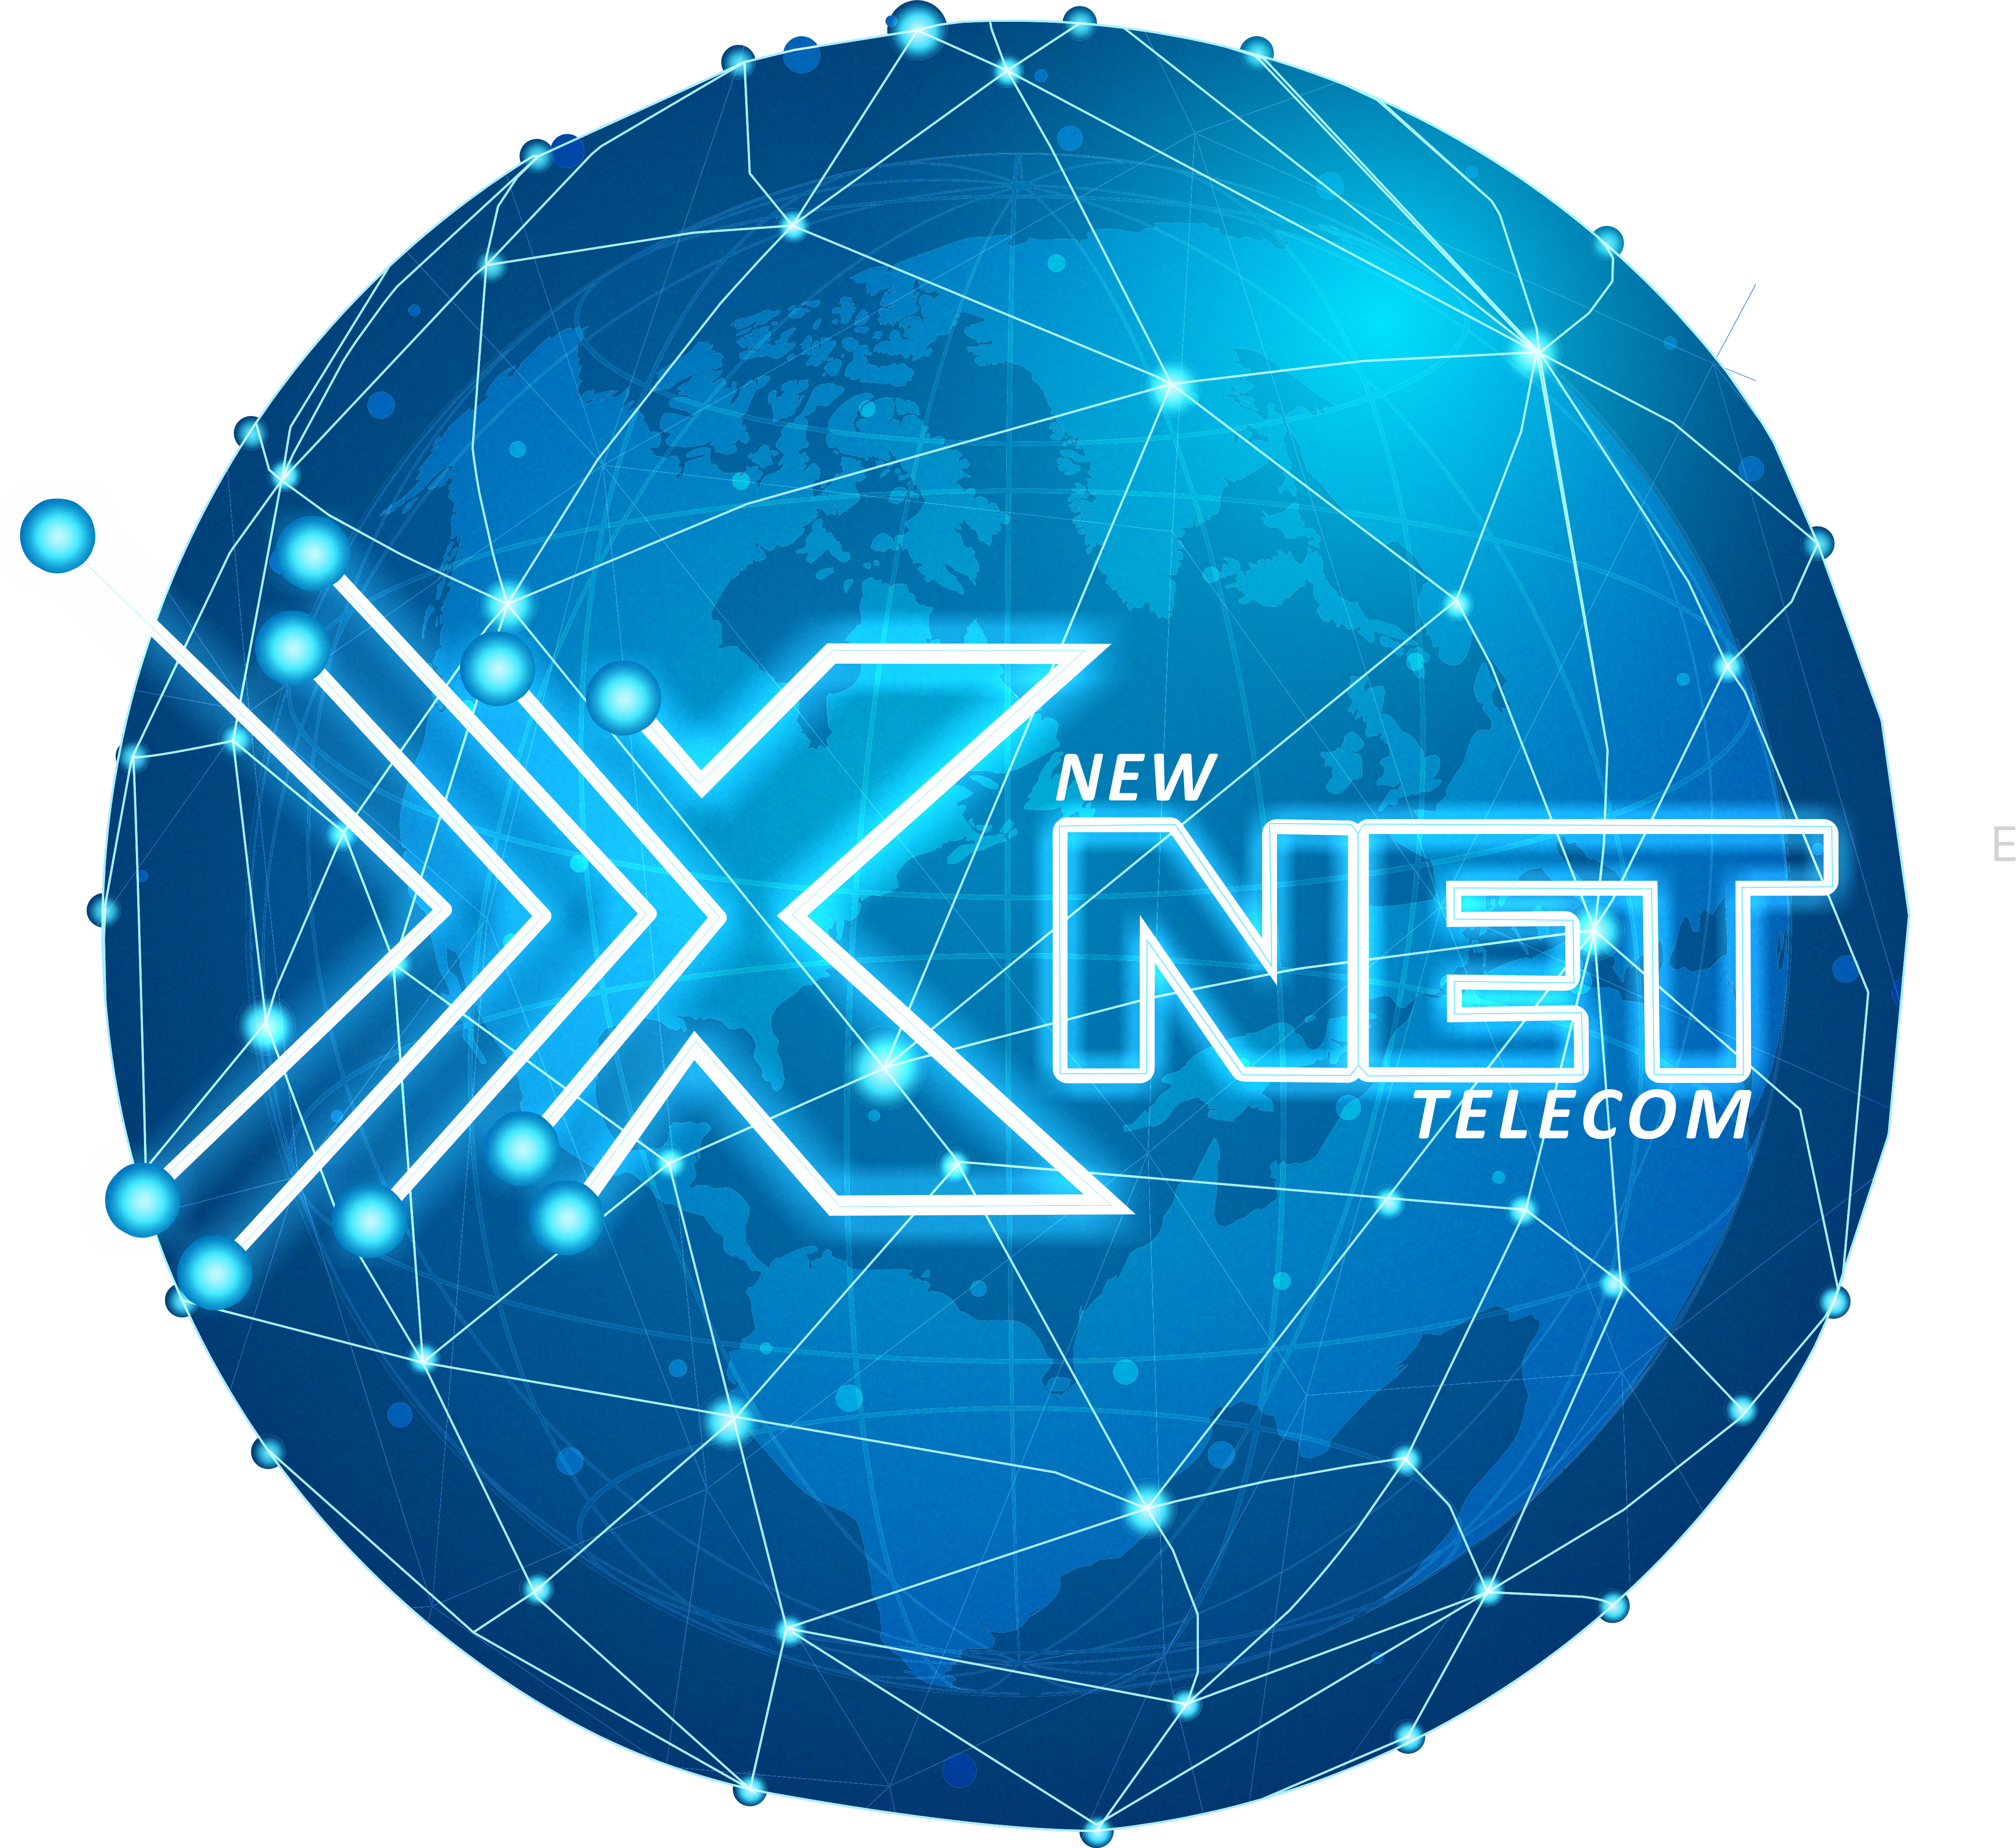 X Net New Telecom – É rápida. É eficaz. É Telecom.